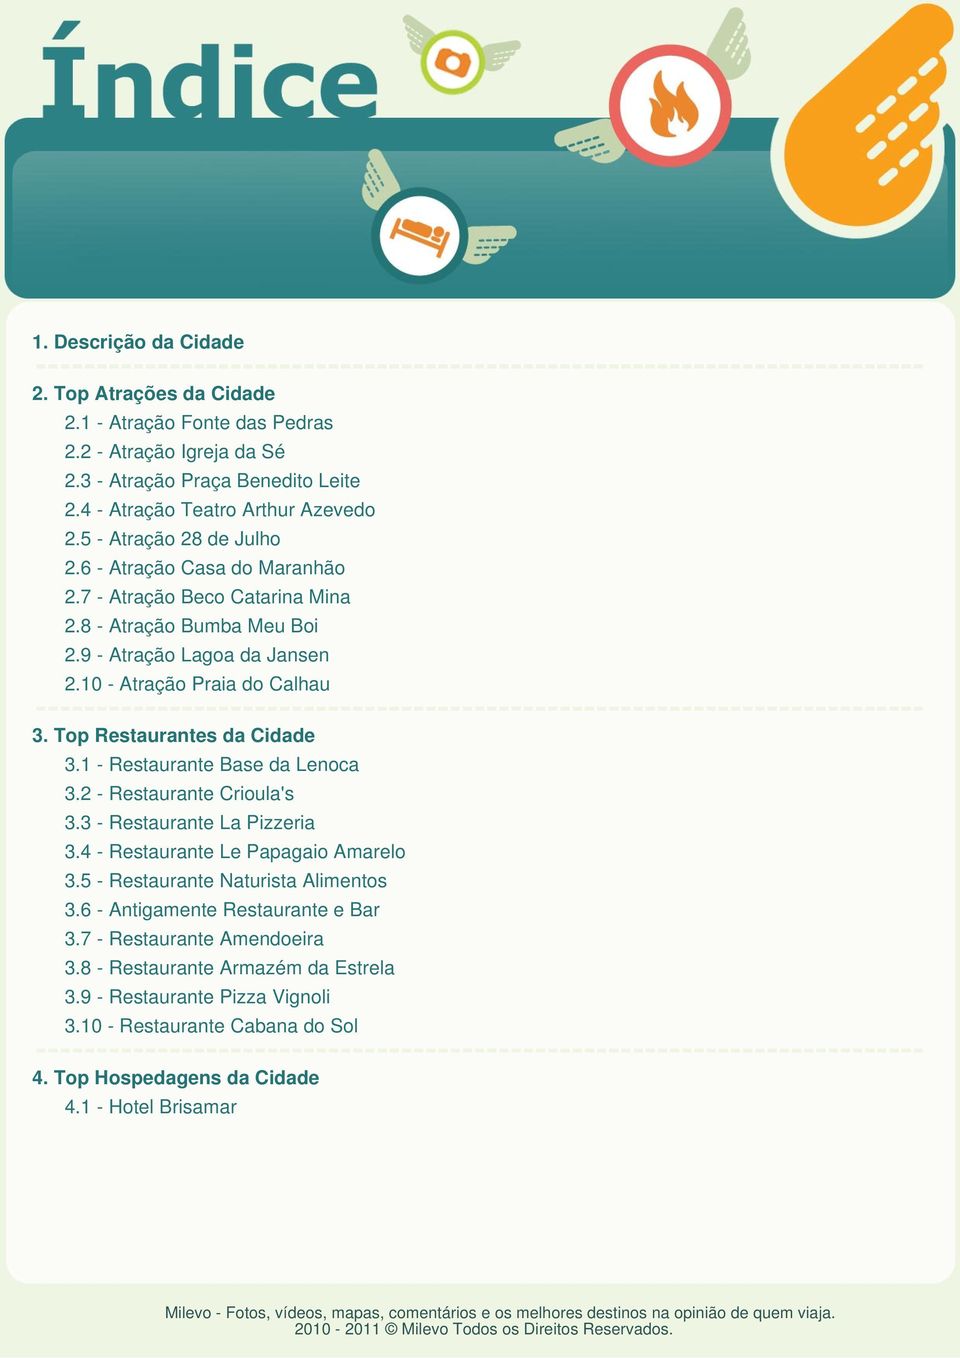 Top Restaurantes da Cidade 3.1 - Restaurante Base da Lenoca 3.2 - Restaurante Crioula's 3.3 - Restaurante La Pizzeria 3.4 - Restaurante Le Papagaio Amarelo 3.